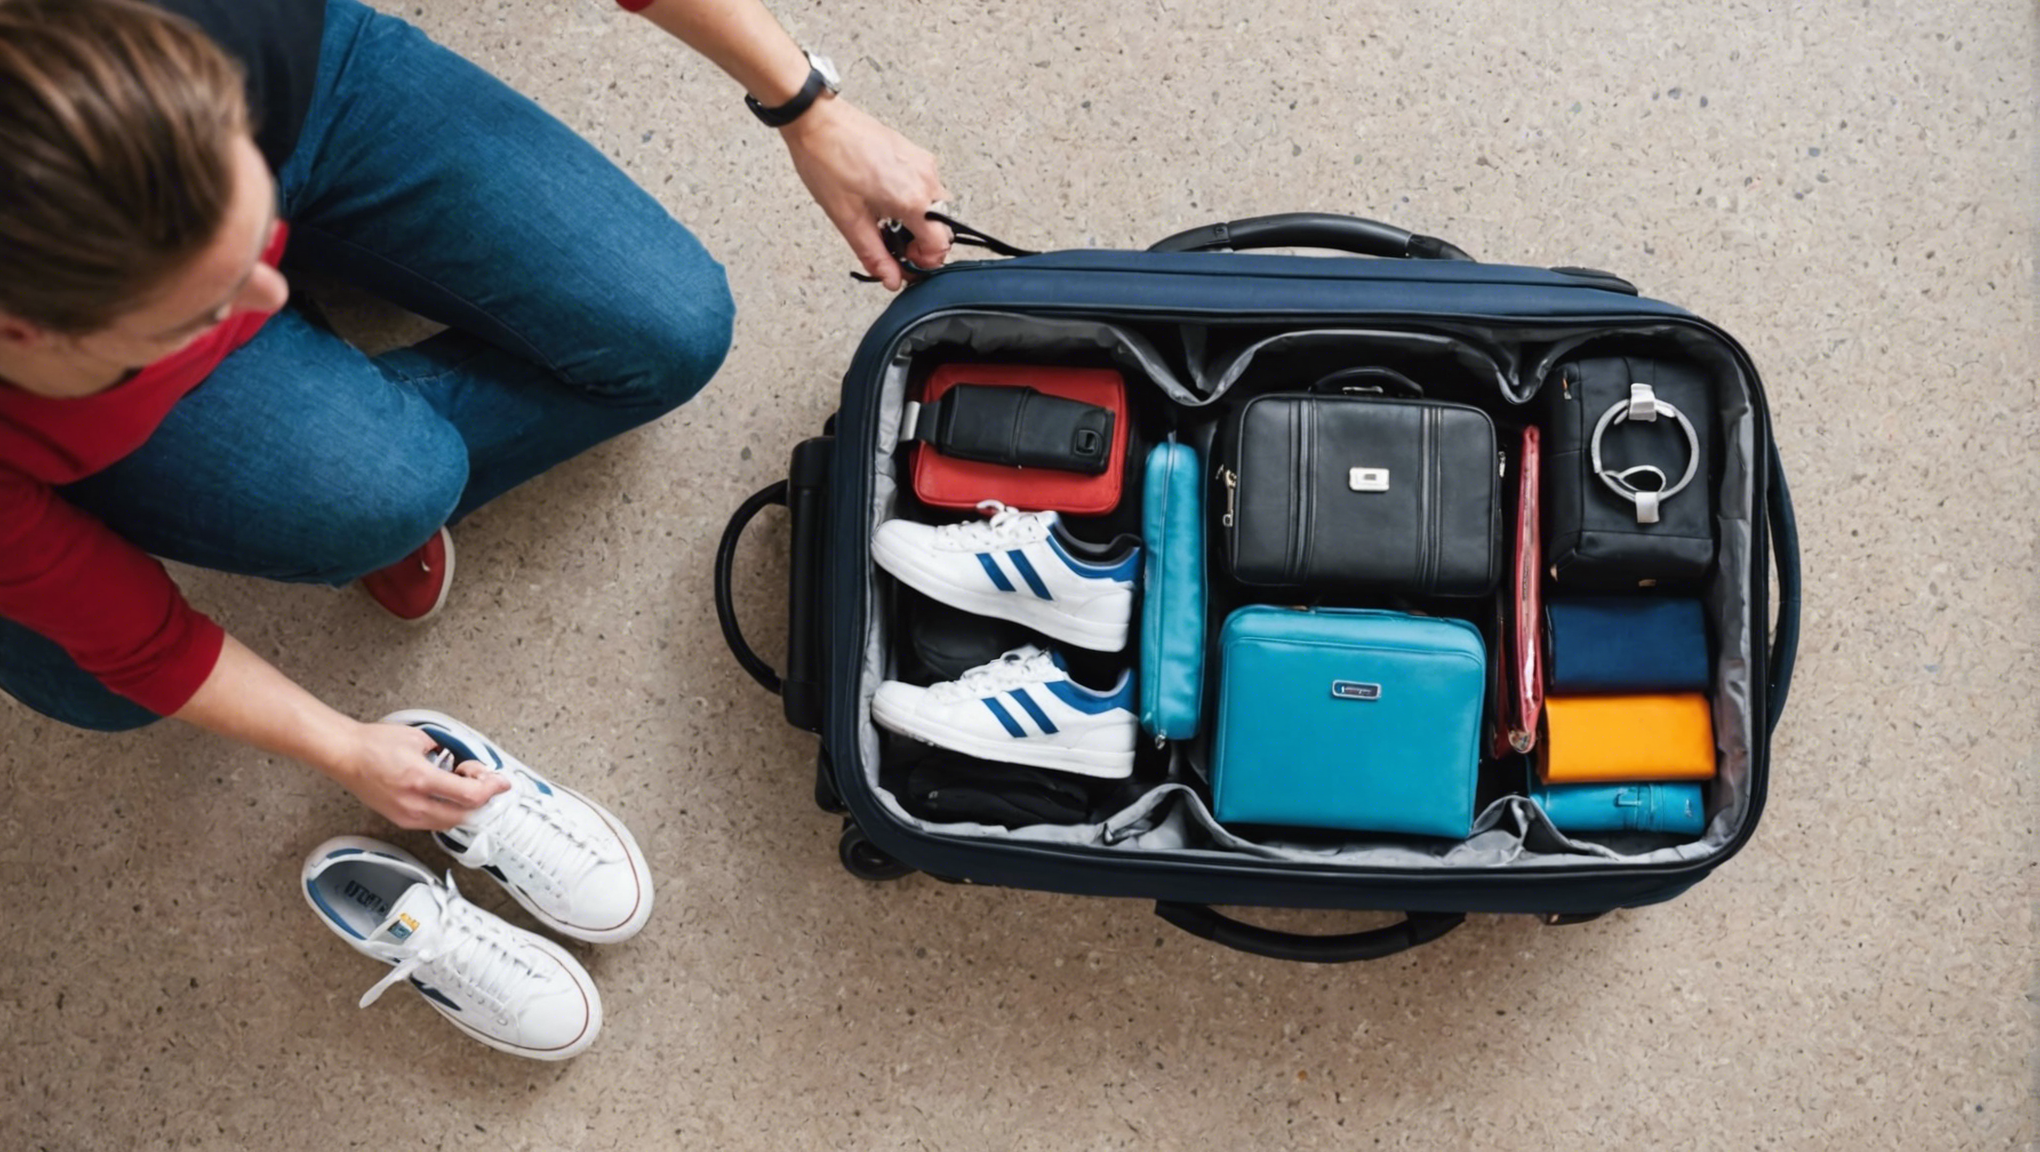 découvrez des conseils pratiques pour peser votre valise avant de prendre l'avion et éviter les frais supplémentaires lors de vos voyages.